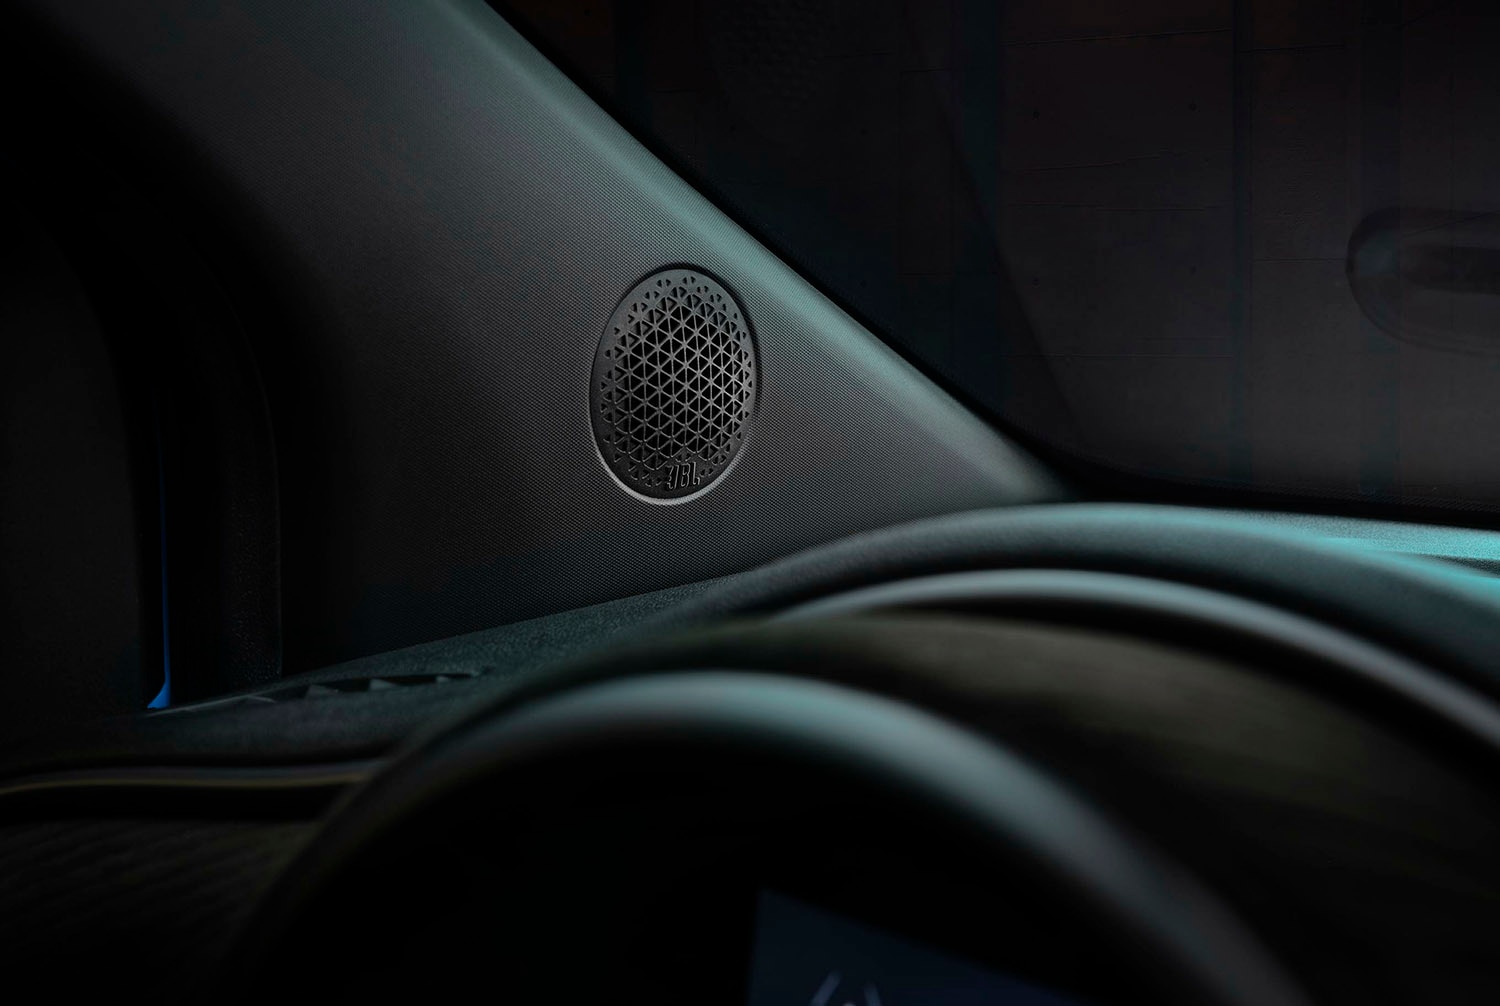 JBL speaker inside a Fiat vehicle